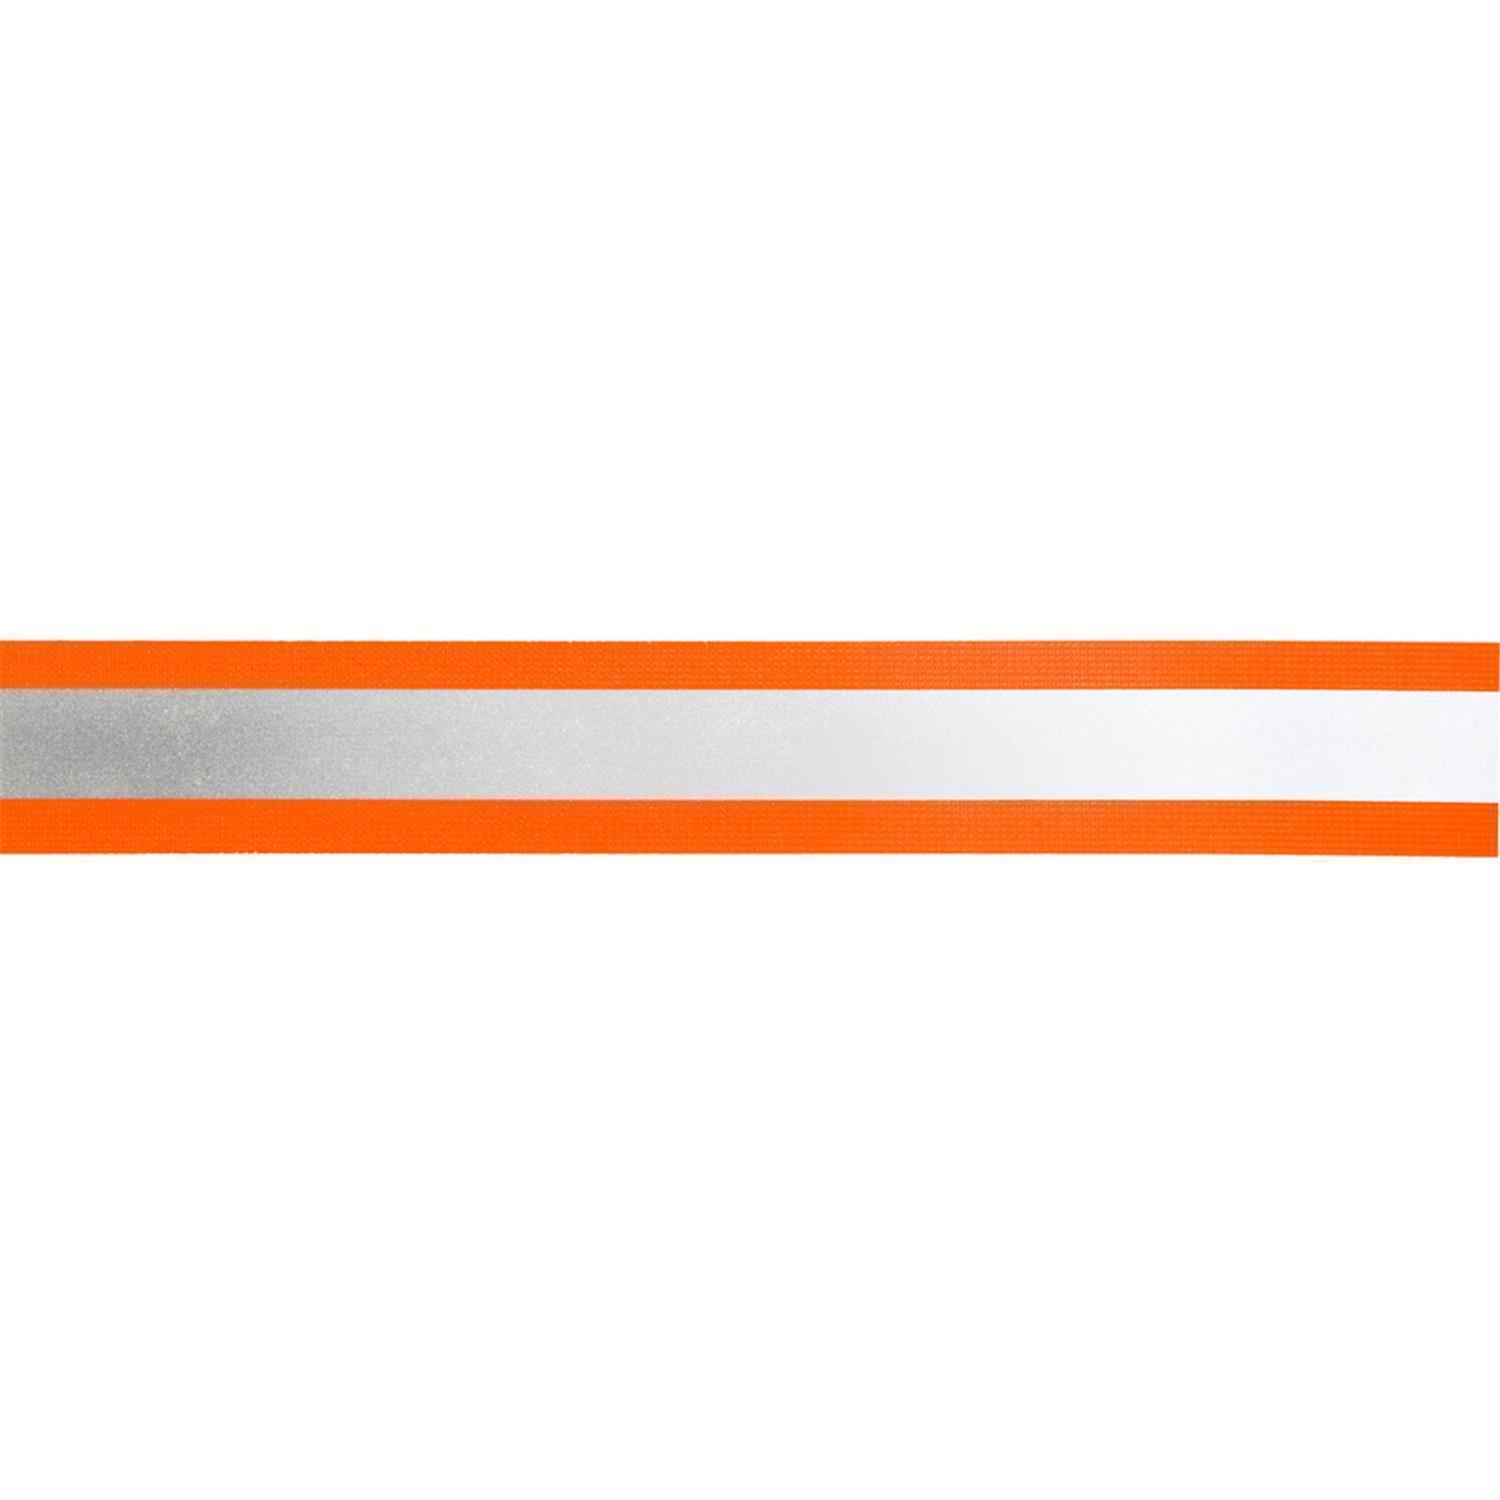 Reflektorband 50mm breit in 2 Farben orange-silber 05 Meter